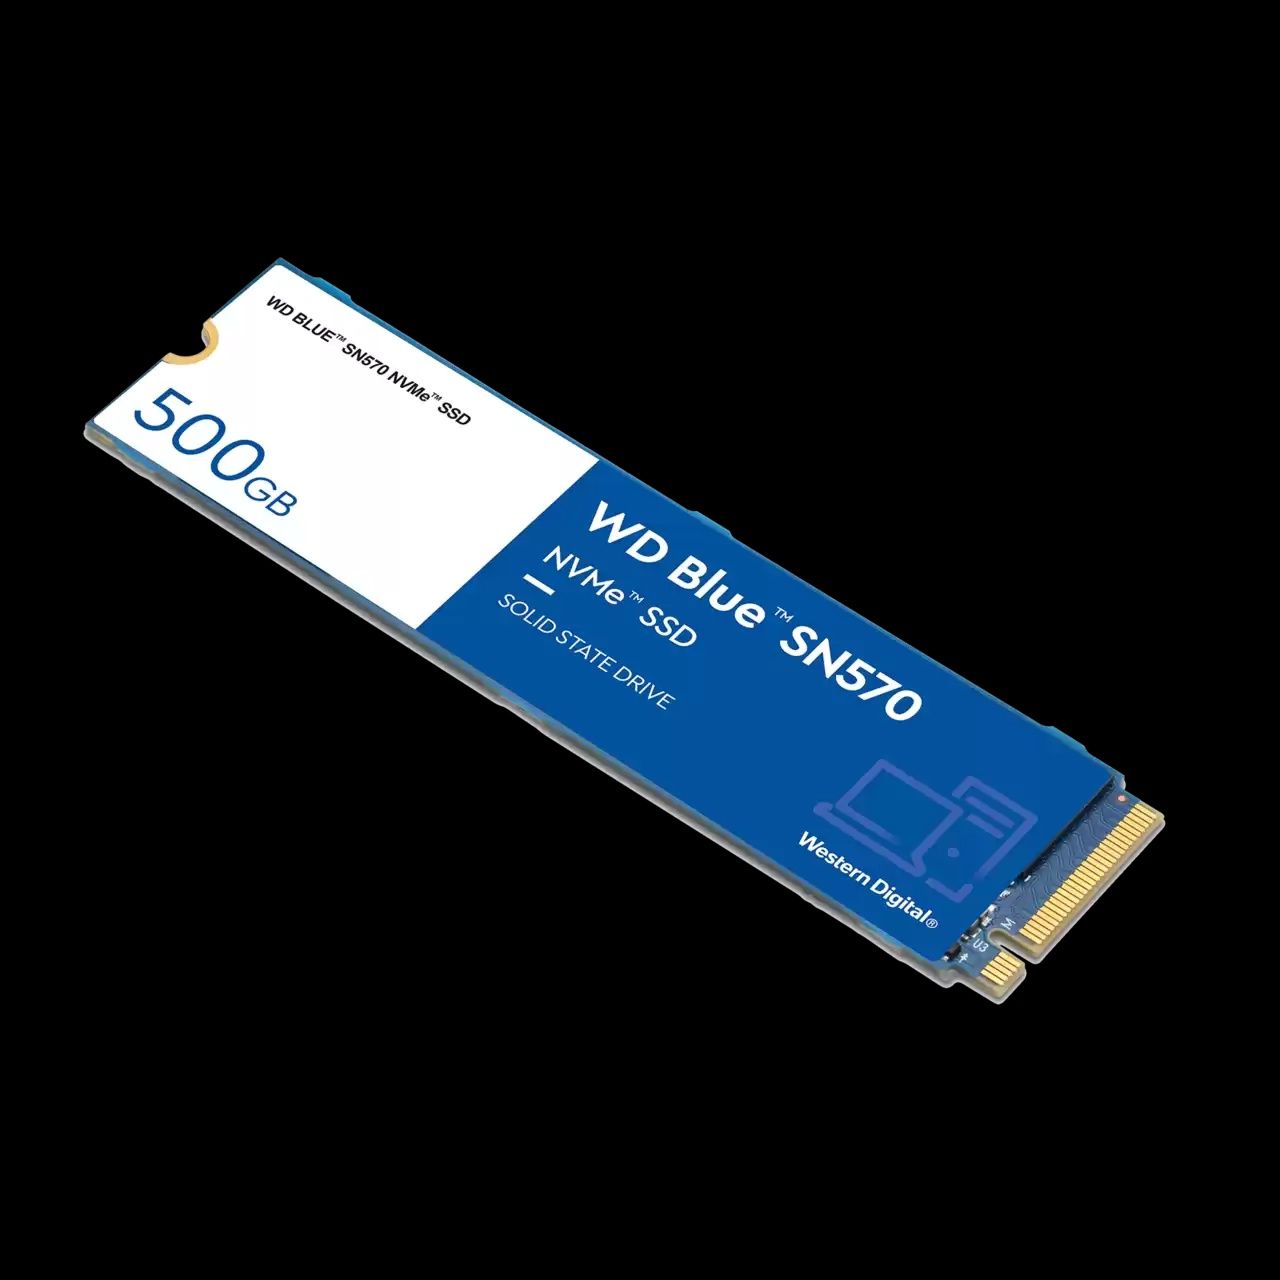 SSD WD Blue SN570 NVMe,500 gb,sigilat